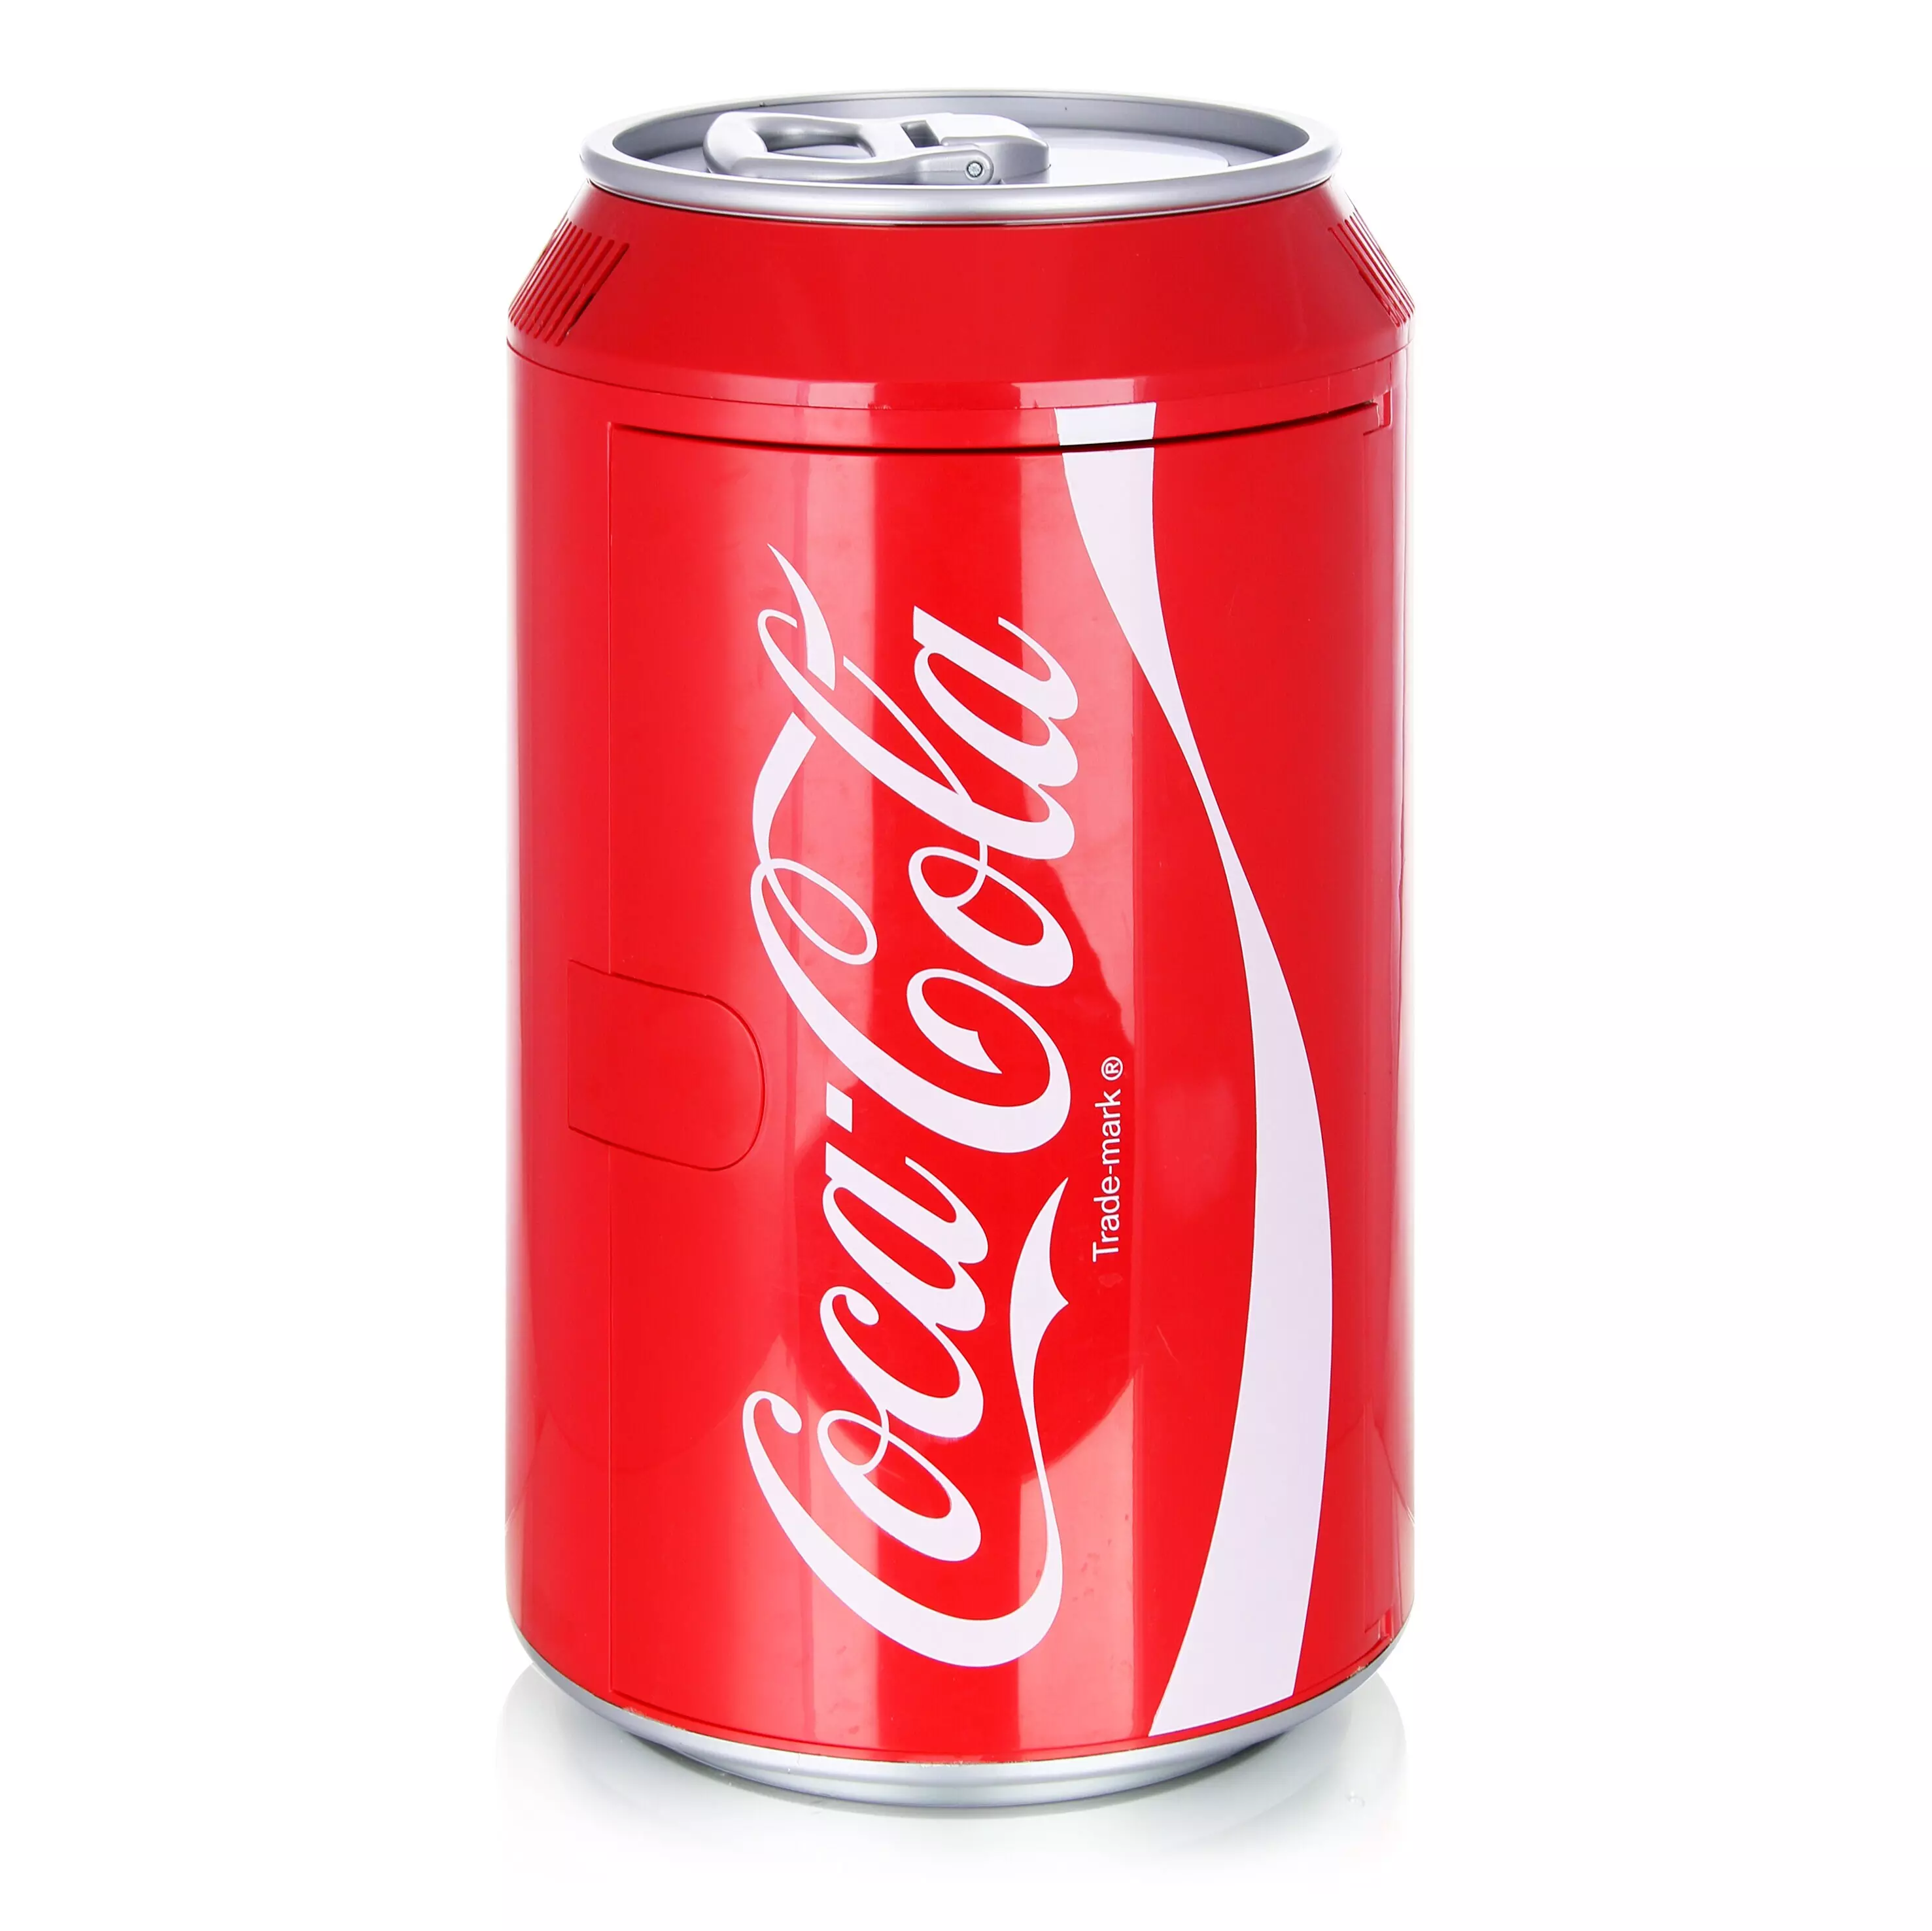 Dometic Ezetil Coca Cola Cool Can 10